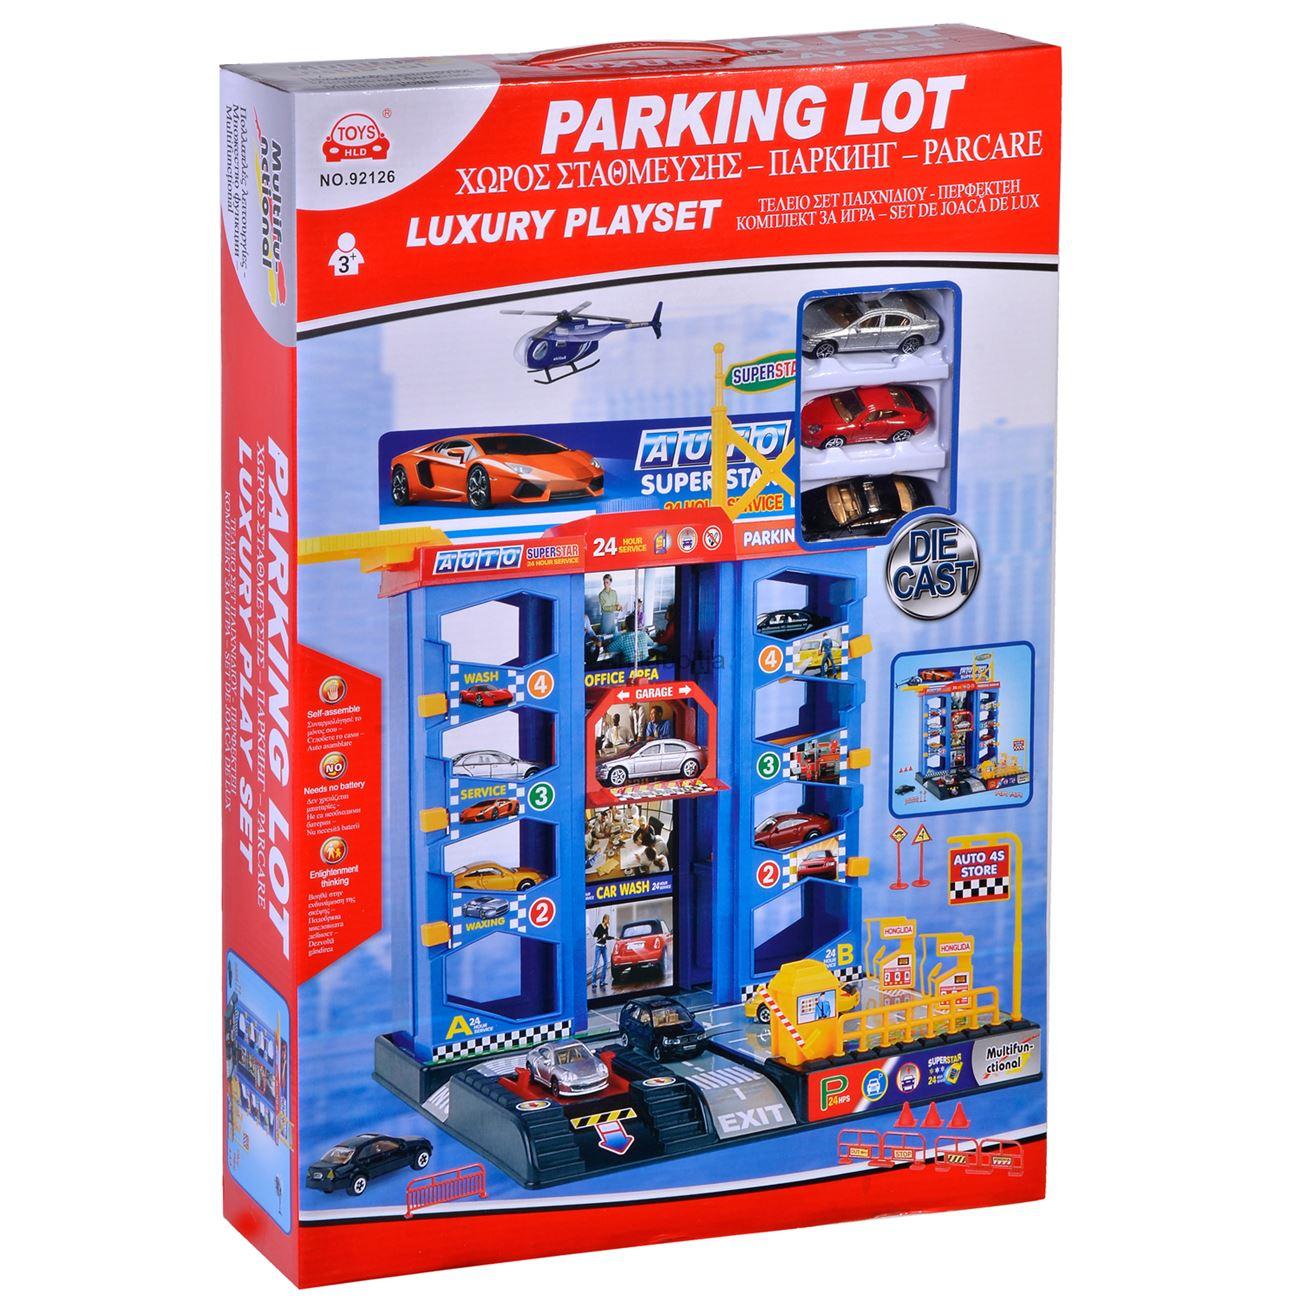 Parking LOT garázs